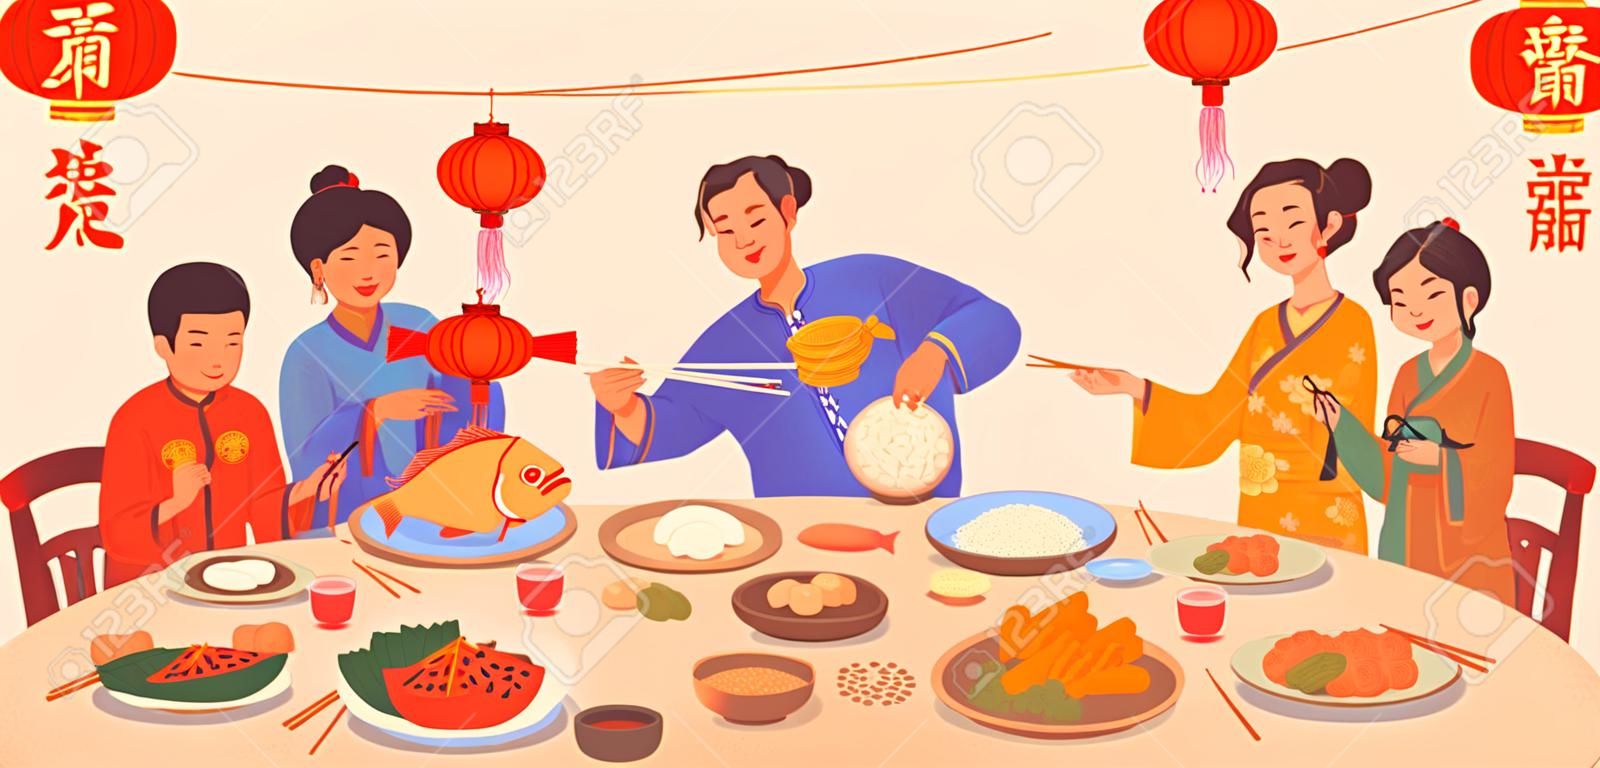 Chinesische Neujahrstextübersetzung, Galadinner mit Essen auf Tellern und Menschenhänden, die Essstäbchen halten, Dekoration mit roten Laternen. Gerichte der traditionellen chinesischen Küche, Fisch und Reis, Knödel, Gemüse